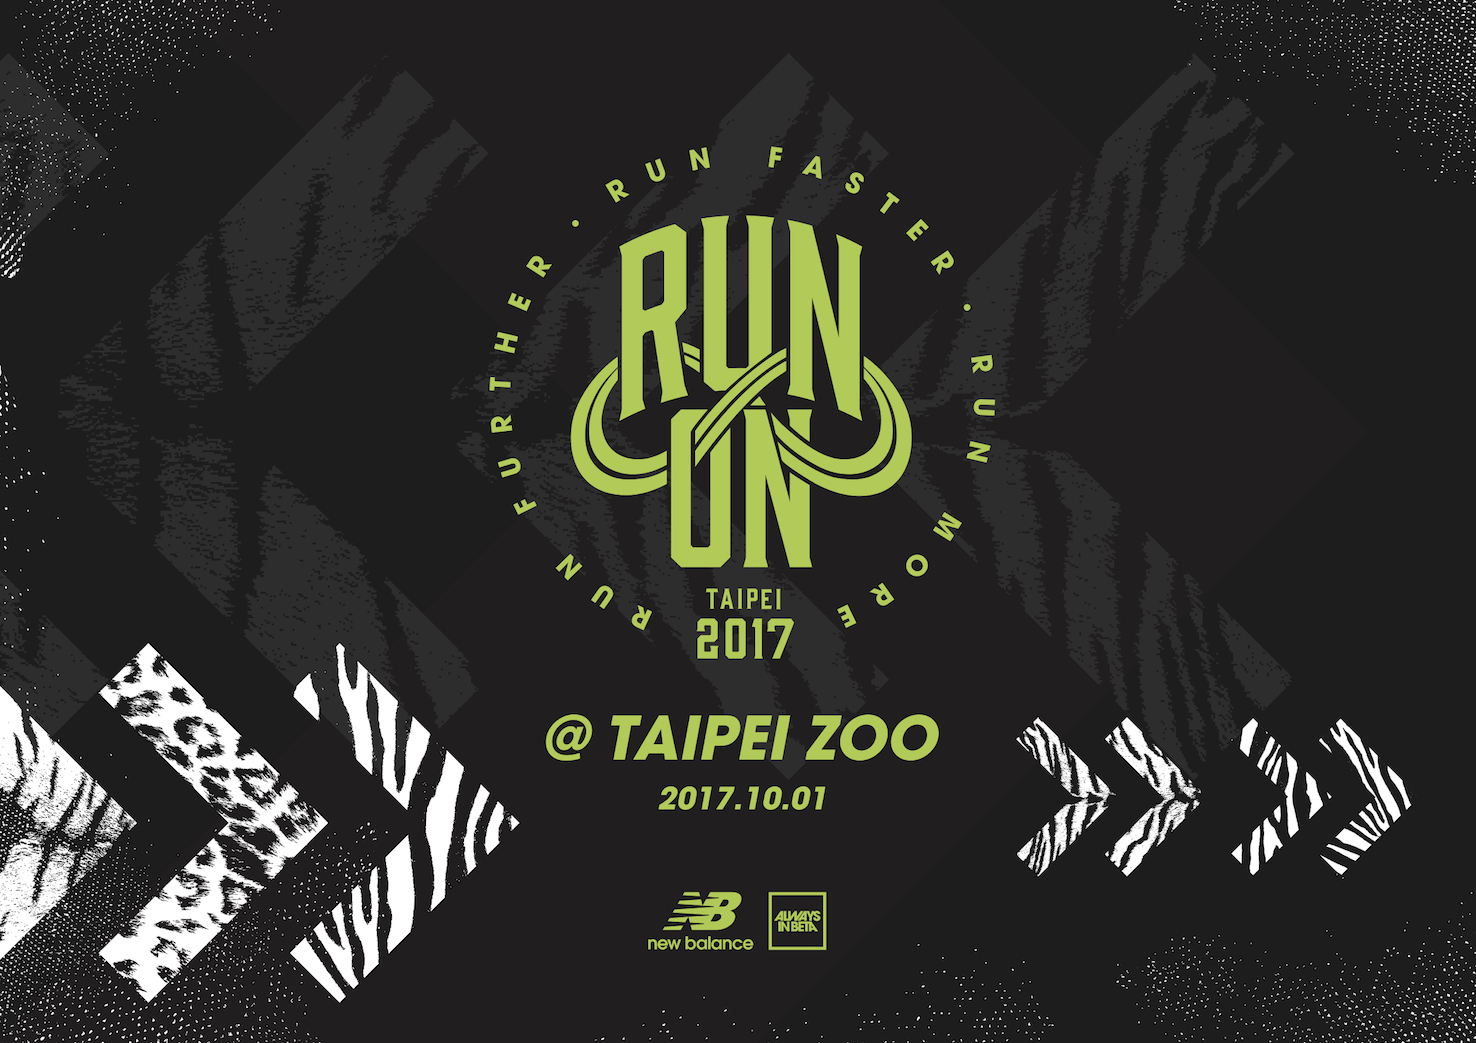 2017 new balance run on taipei zoo